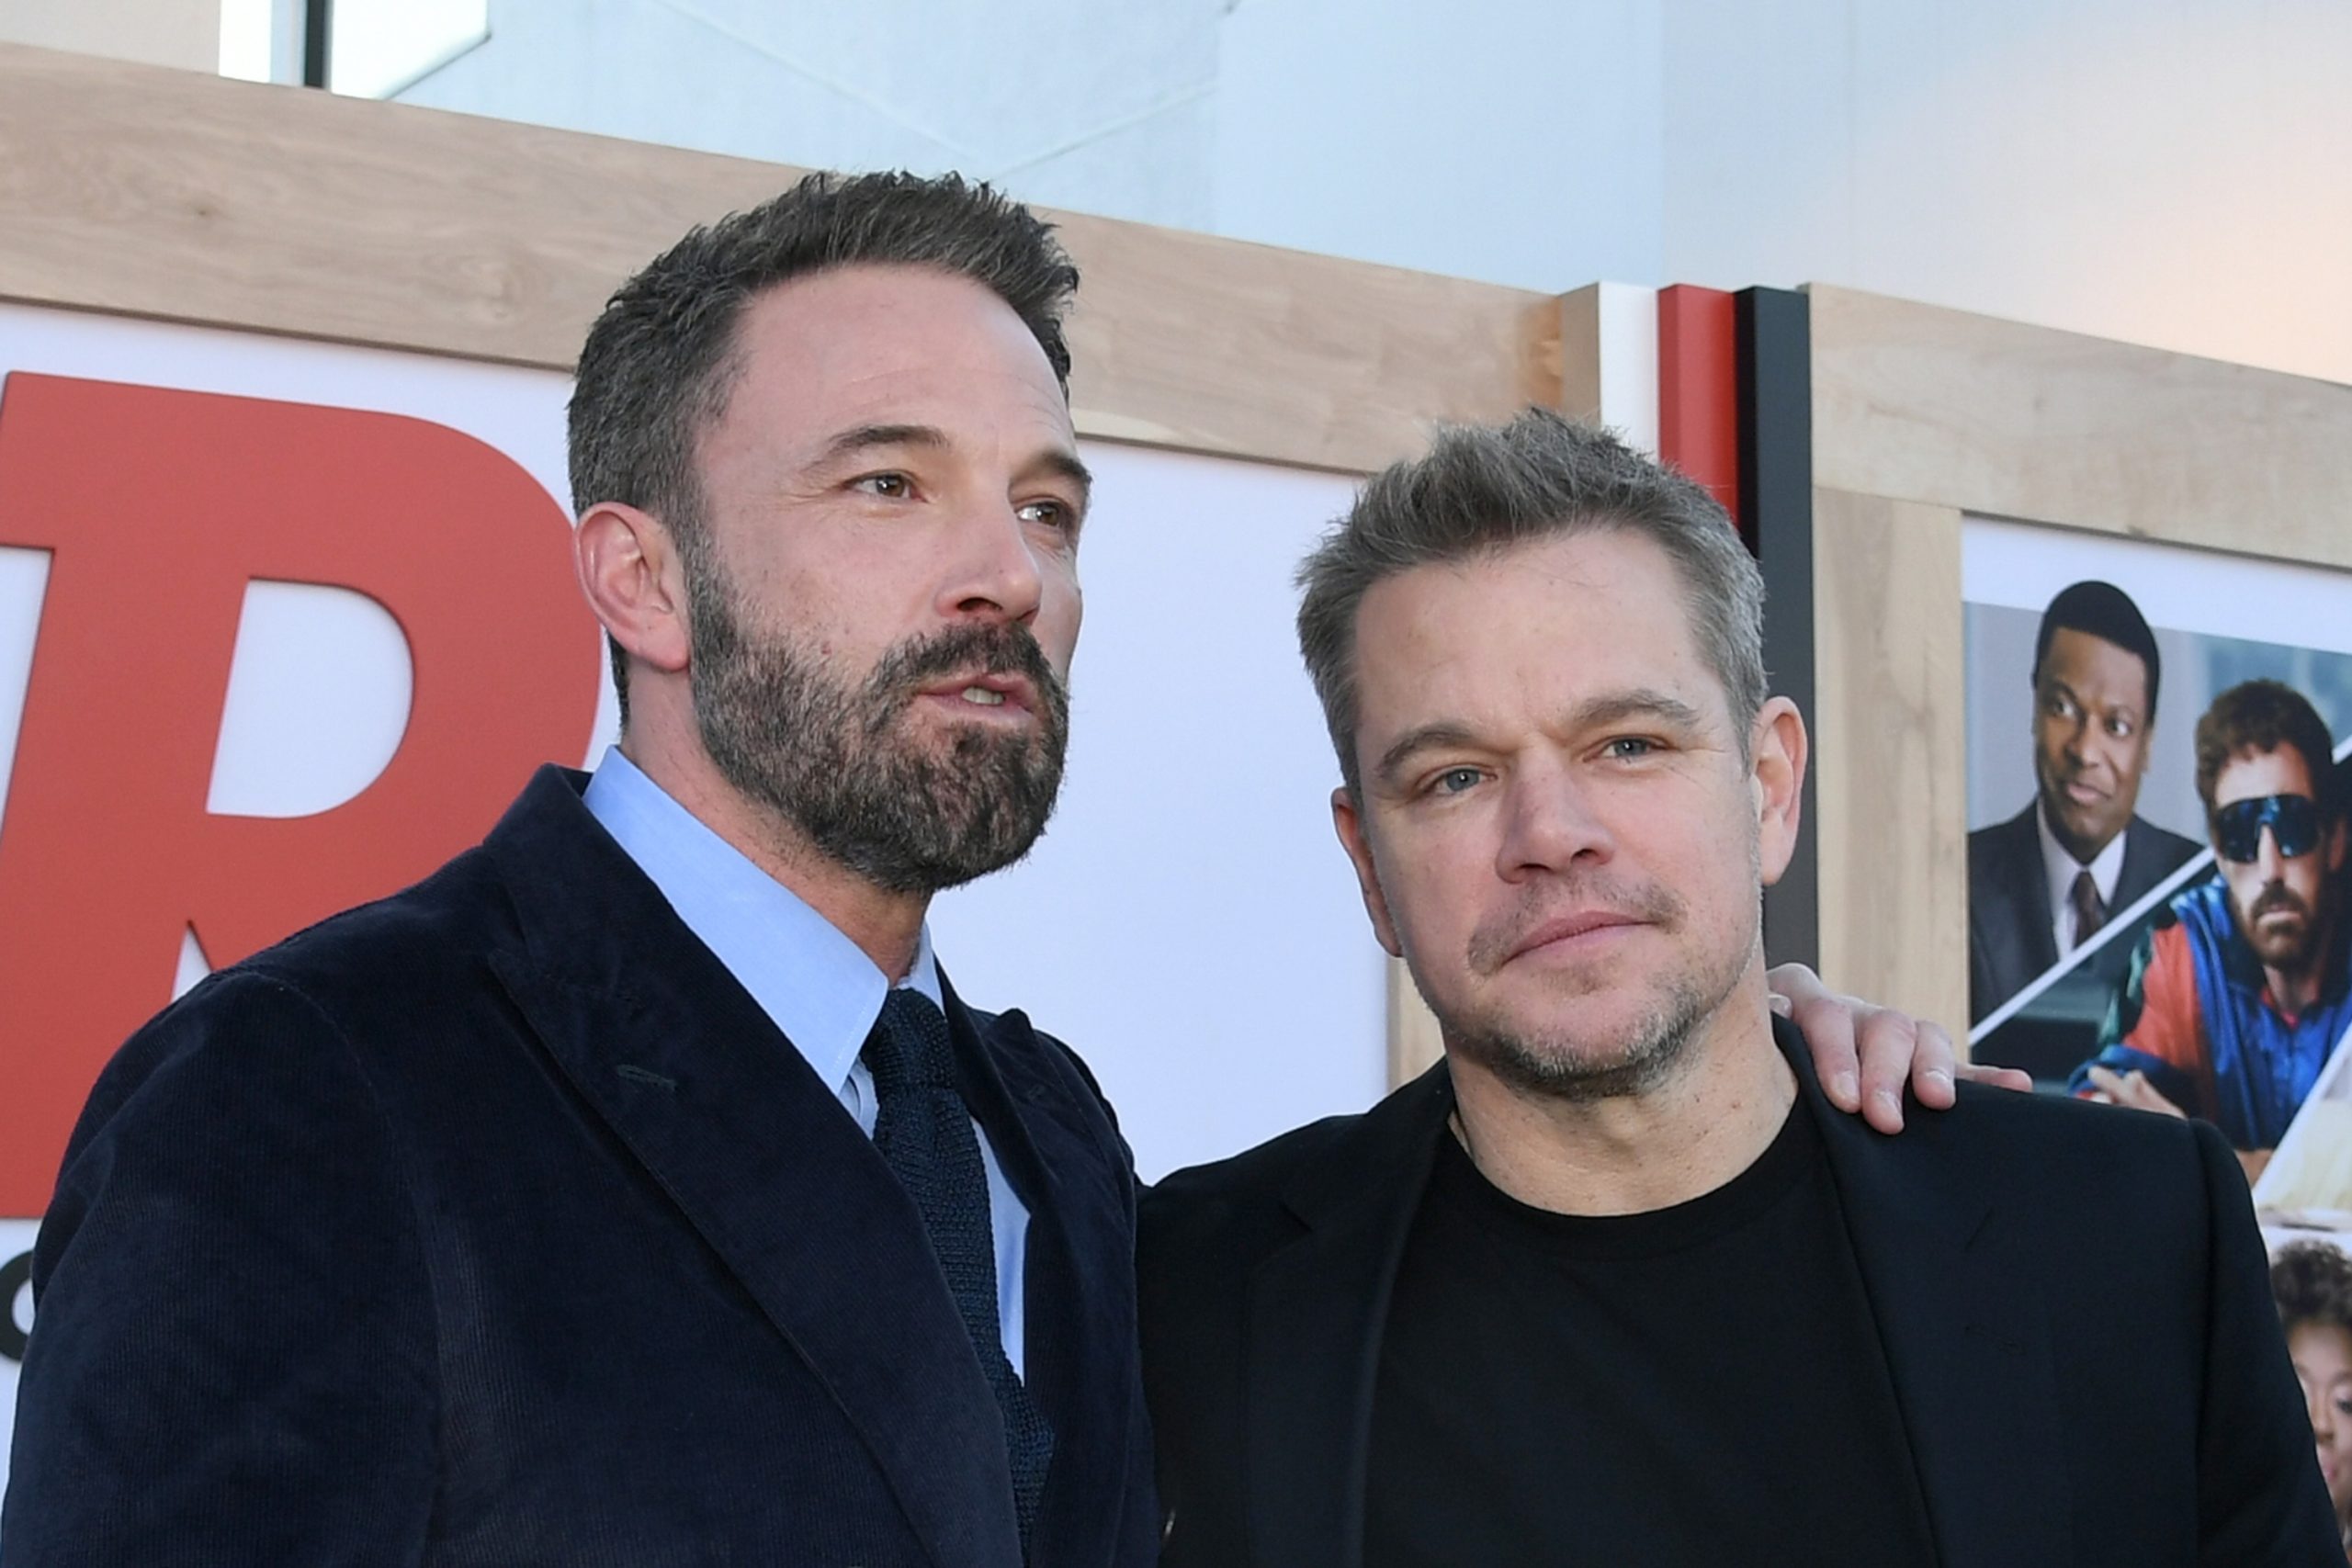 Ben Affleck és Matt Damon nem csak az Air - Harc a legendáért című film kapcsán találkoztak mostanában, egyébként is barátok. "Együtt nőttünk fel, ugyanazokat a dolgokat szeretjük: a színészkedést és a filmkészítést. Egymás megszállottságából táplálkoztunk a legmeghatározóbb fontos éveink során, ez egy életre összekötött bennünket" - fogalmazott Matt Damon (Kép: JC Olivera/GA/The Hollywood Reporter via Getty Images)